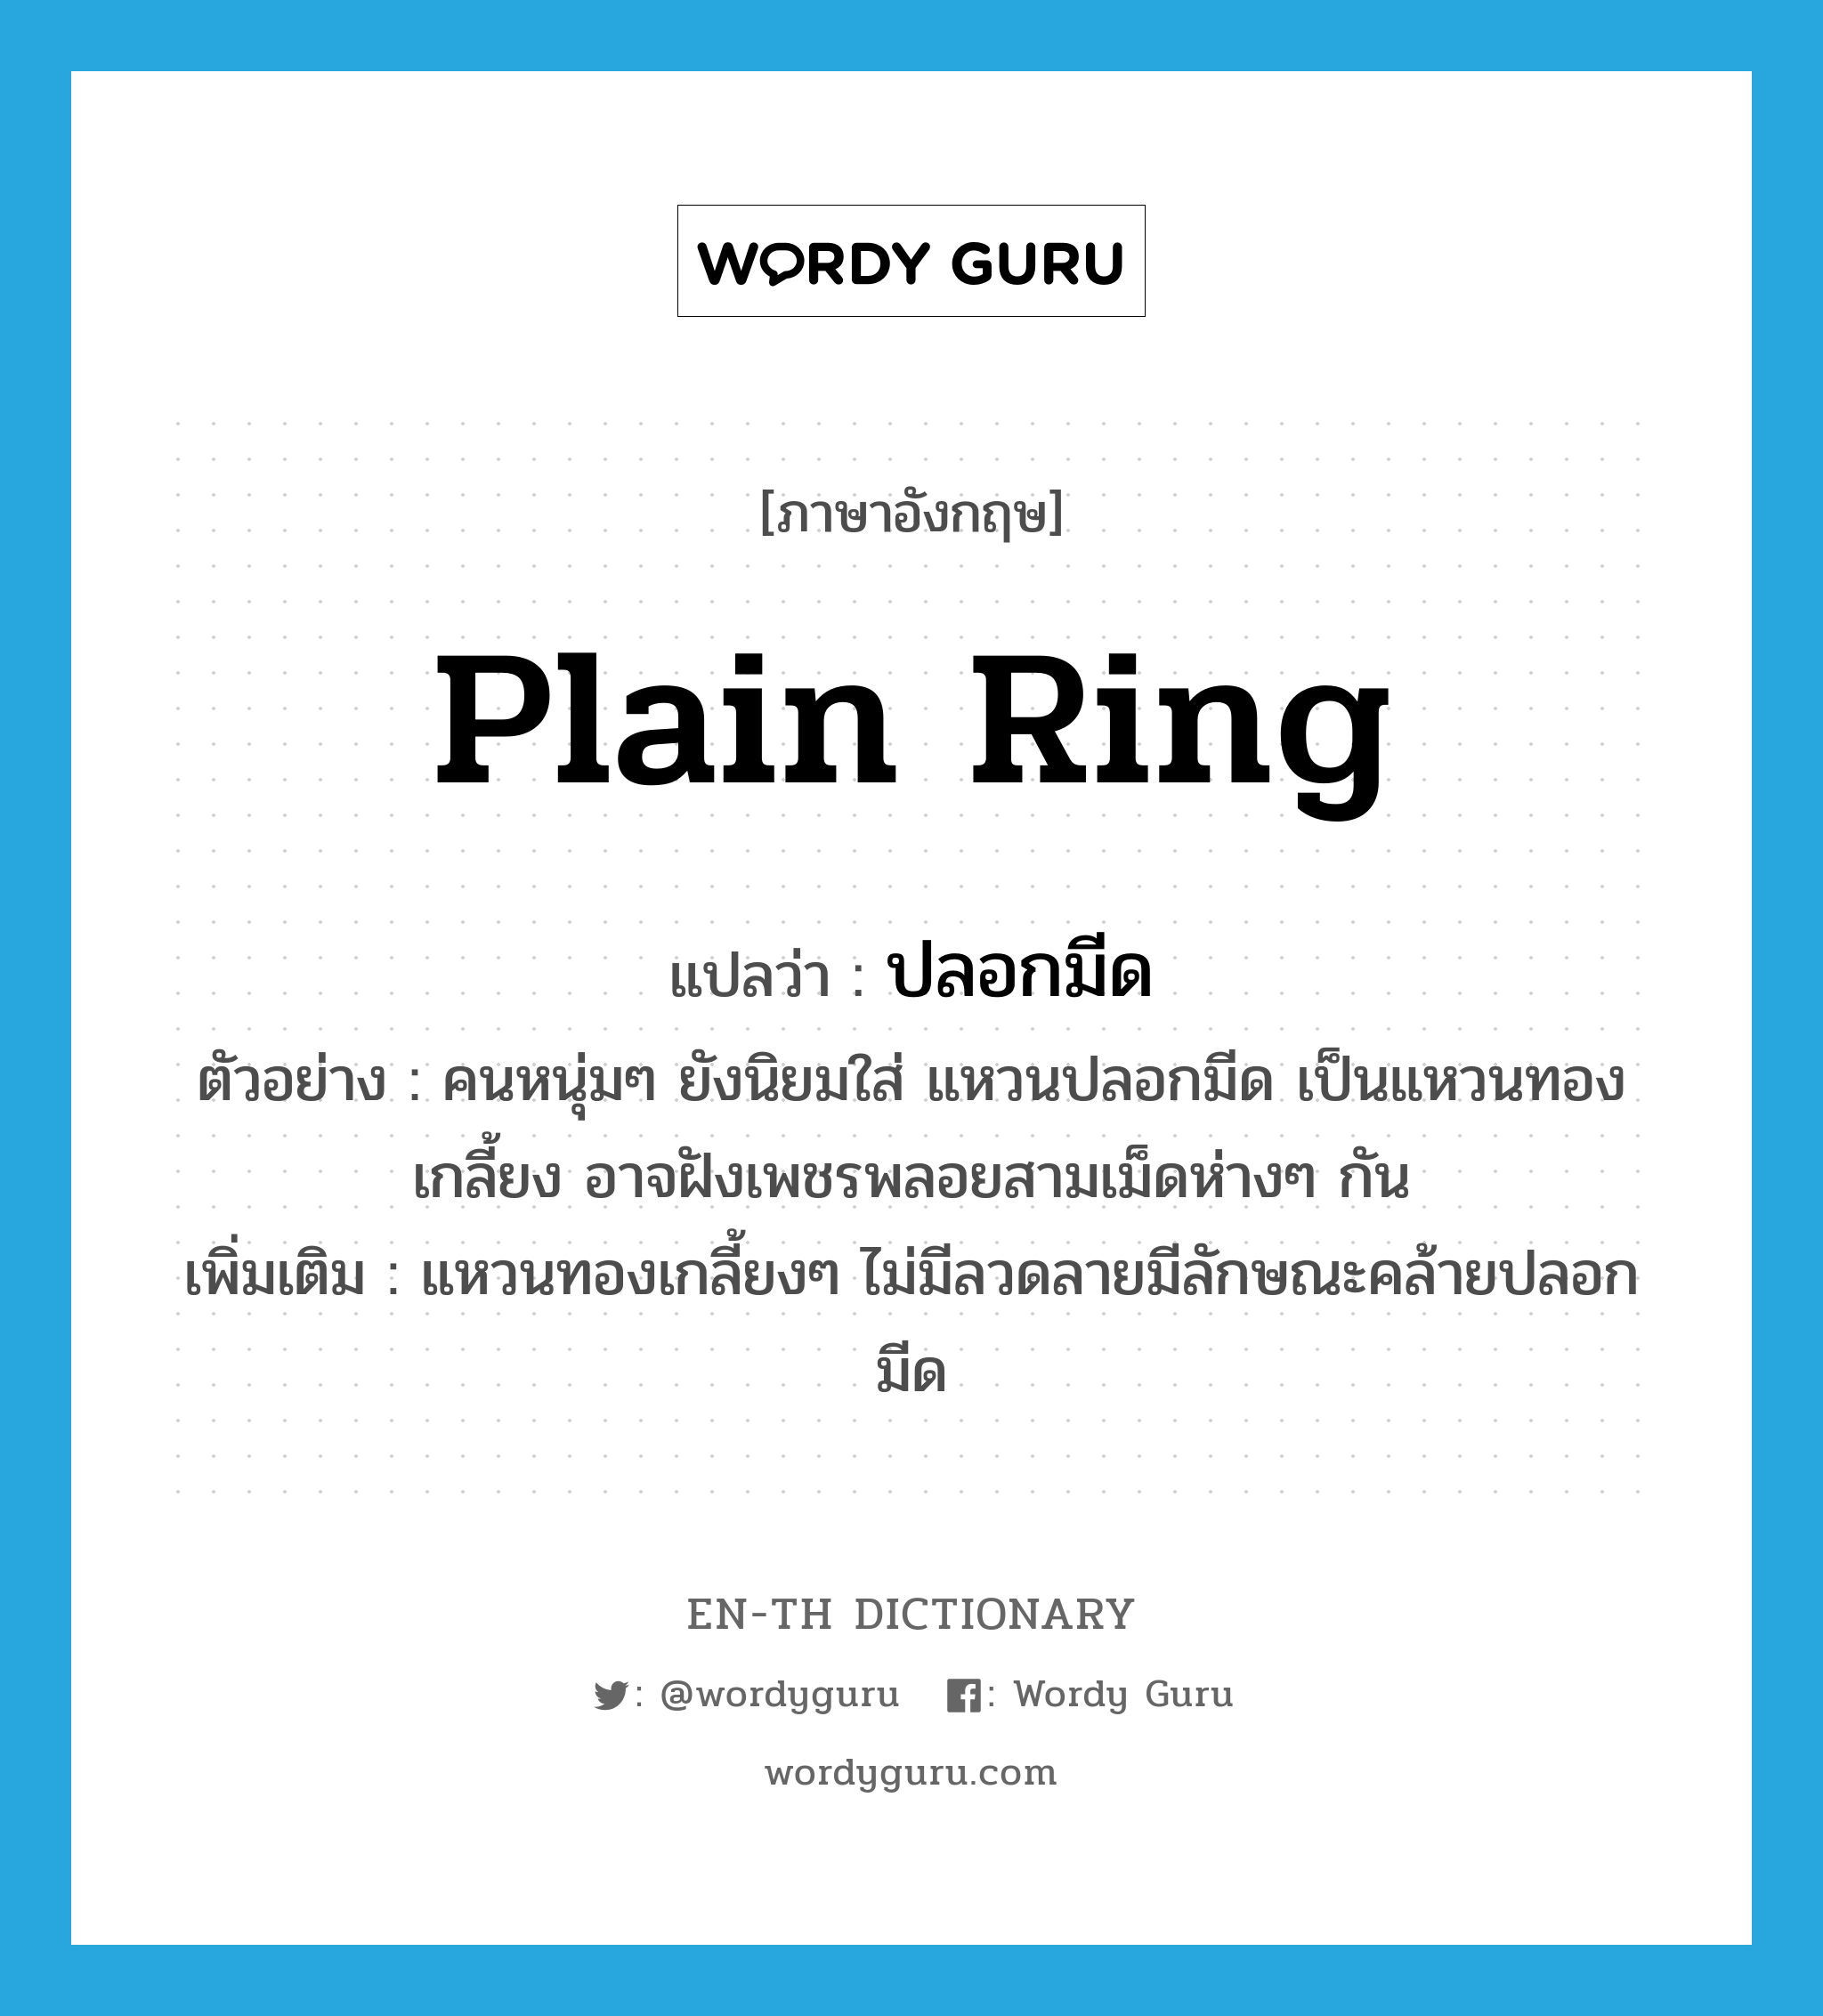 plain ring แปลว่า?, คำศัพท์ภาษาอังกฤษ plain ring แปลว่า ปลอกมีด ประเภท N ตัวอย่าง คนหนุ่มๆ ยังนิยมใส่ แหวนปลอกมีด เป็นแหวนทองเกลี้ยง อาจฝังเพชรพลอยสามเม็ดห่างๆ กัน เพิ่มเติม แหวนทองเกลี้ยงๆ ไม่มีลวดลายมีลักษณะคล้ายปลอกมีด หมวด N